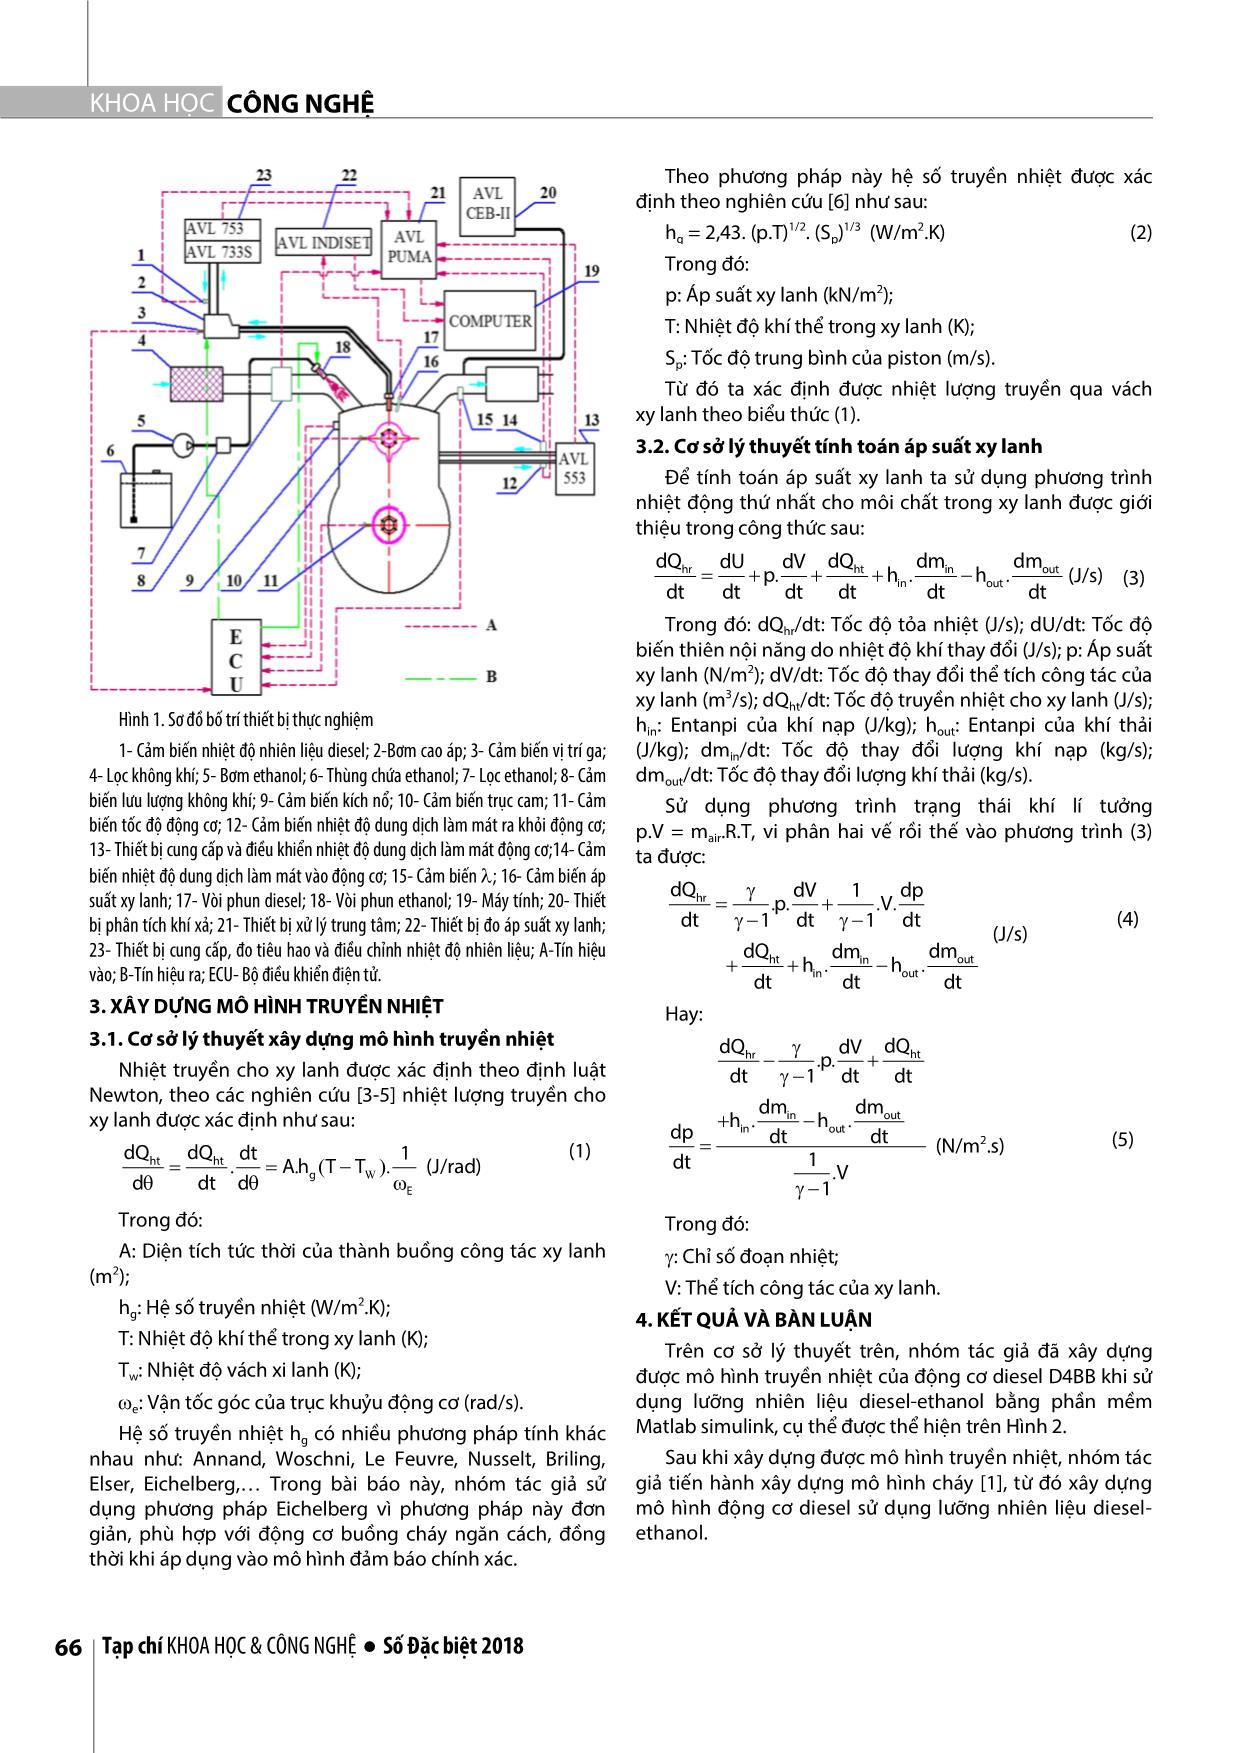 Nghiên cứu xây dựng mô hình truyền nhiệt của động cơ diesel sử dụng lưỡng nhiên liệu Diesel-Ethanol trang 3